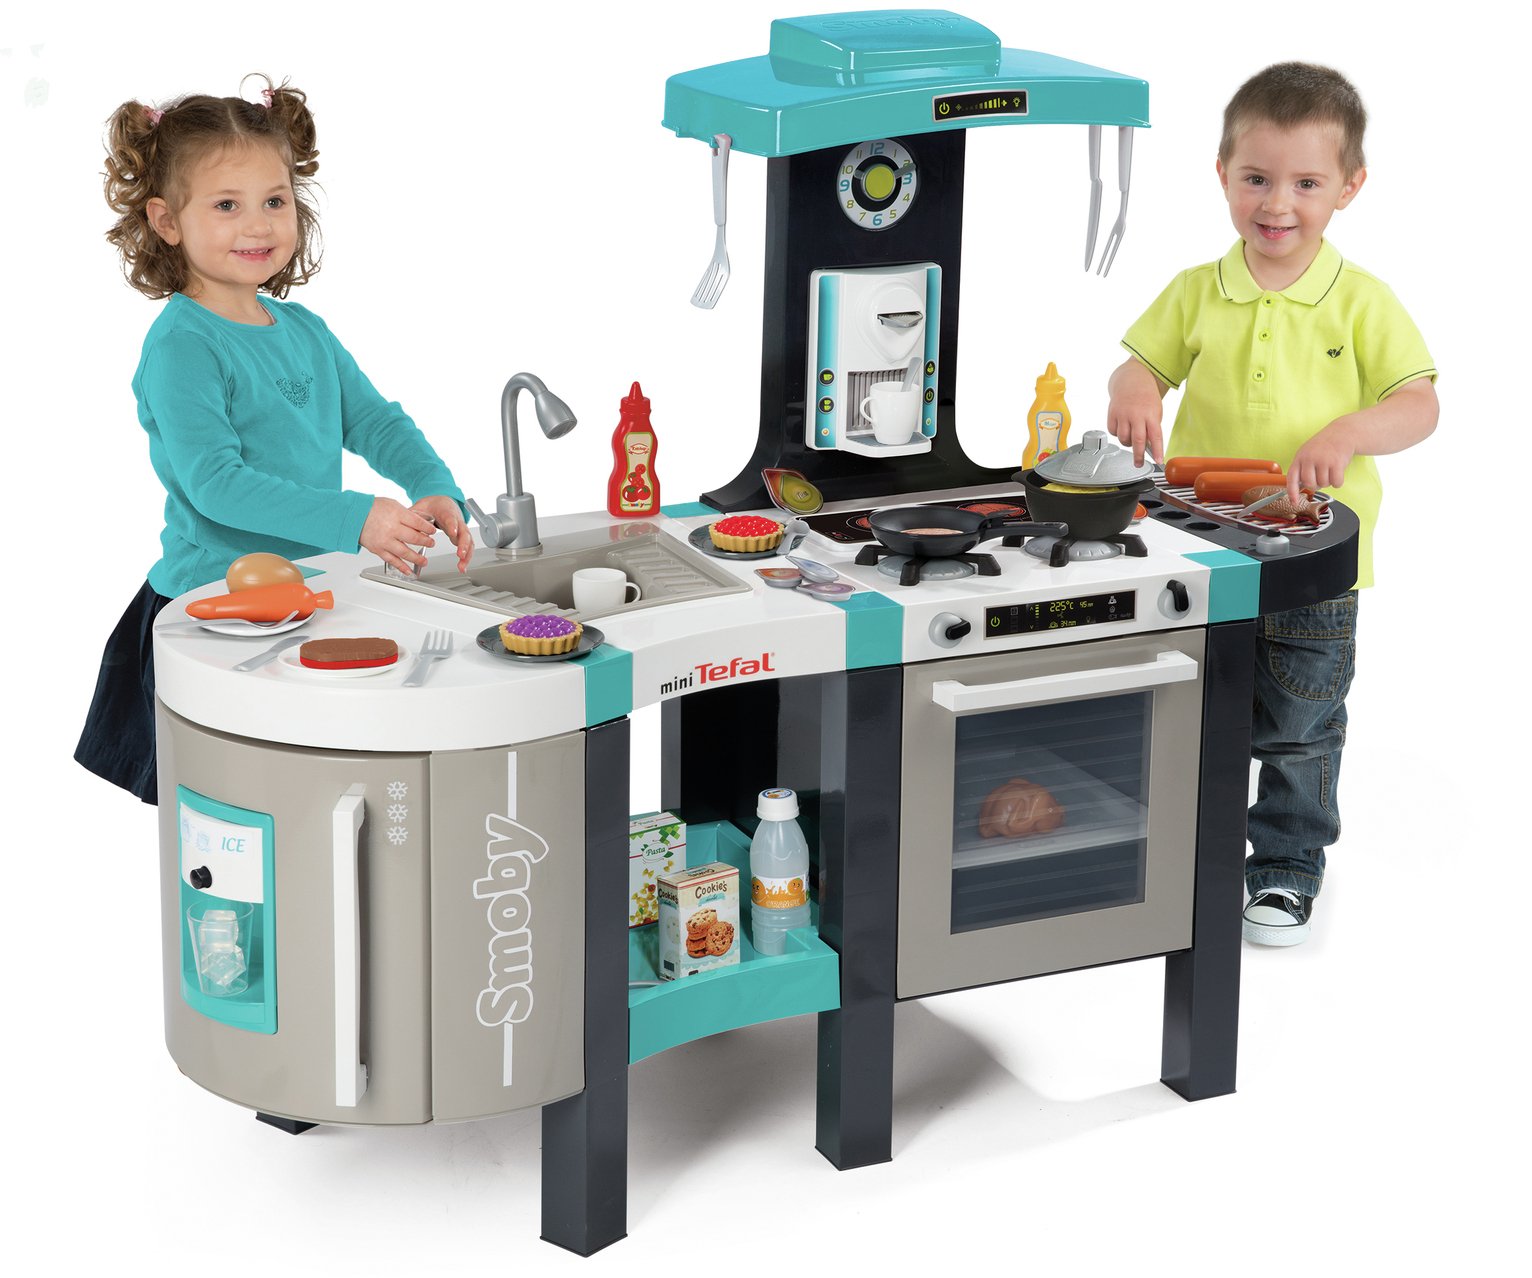 Argos Toy Kitchen Accessories Off 56 Sietelecom Com